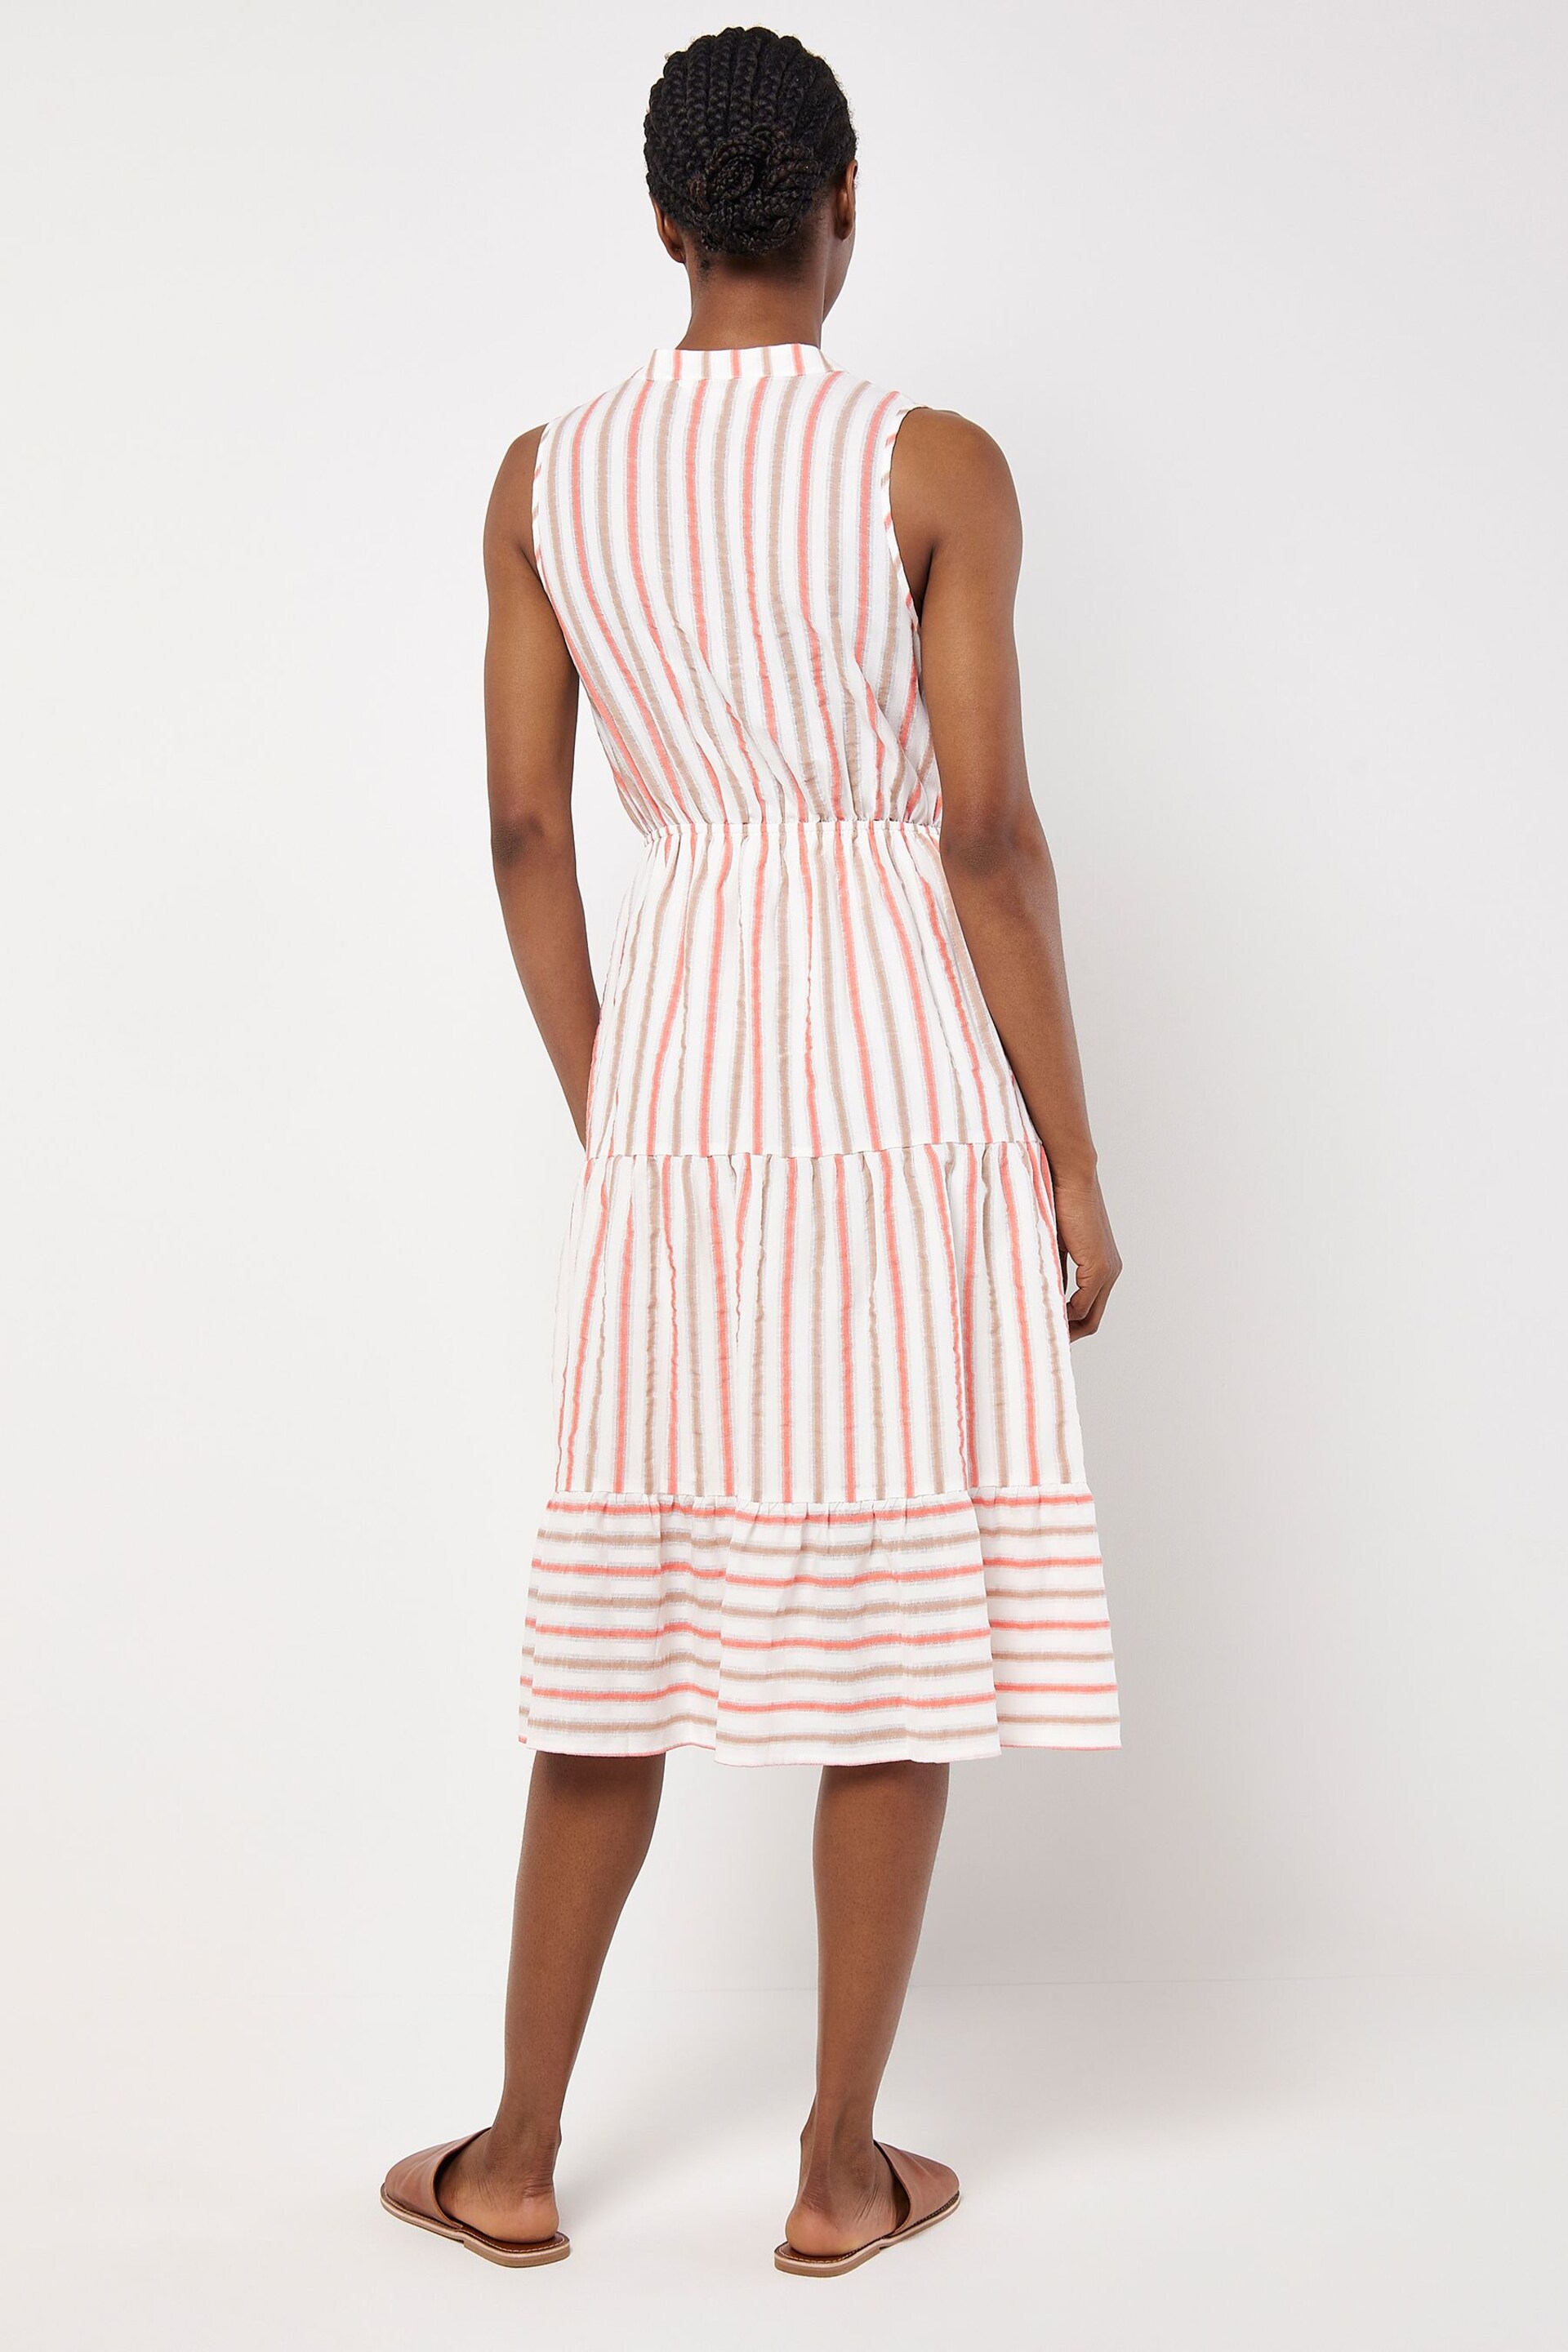 Apricot Cream Tiered Button Stripe Midi Dress - Image 3 of 4